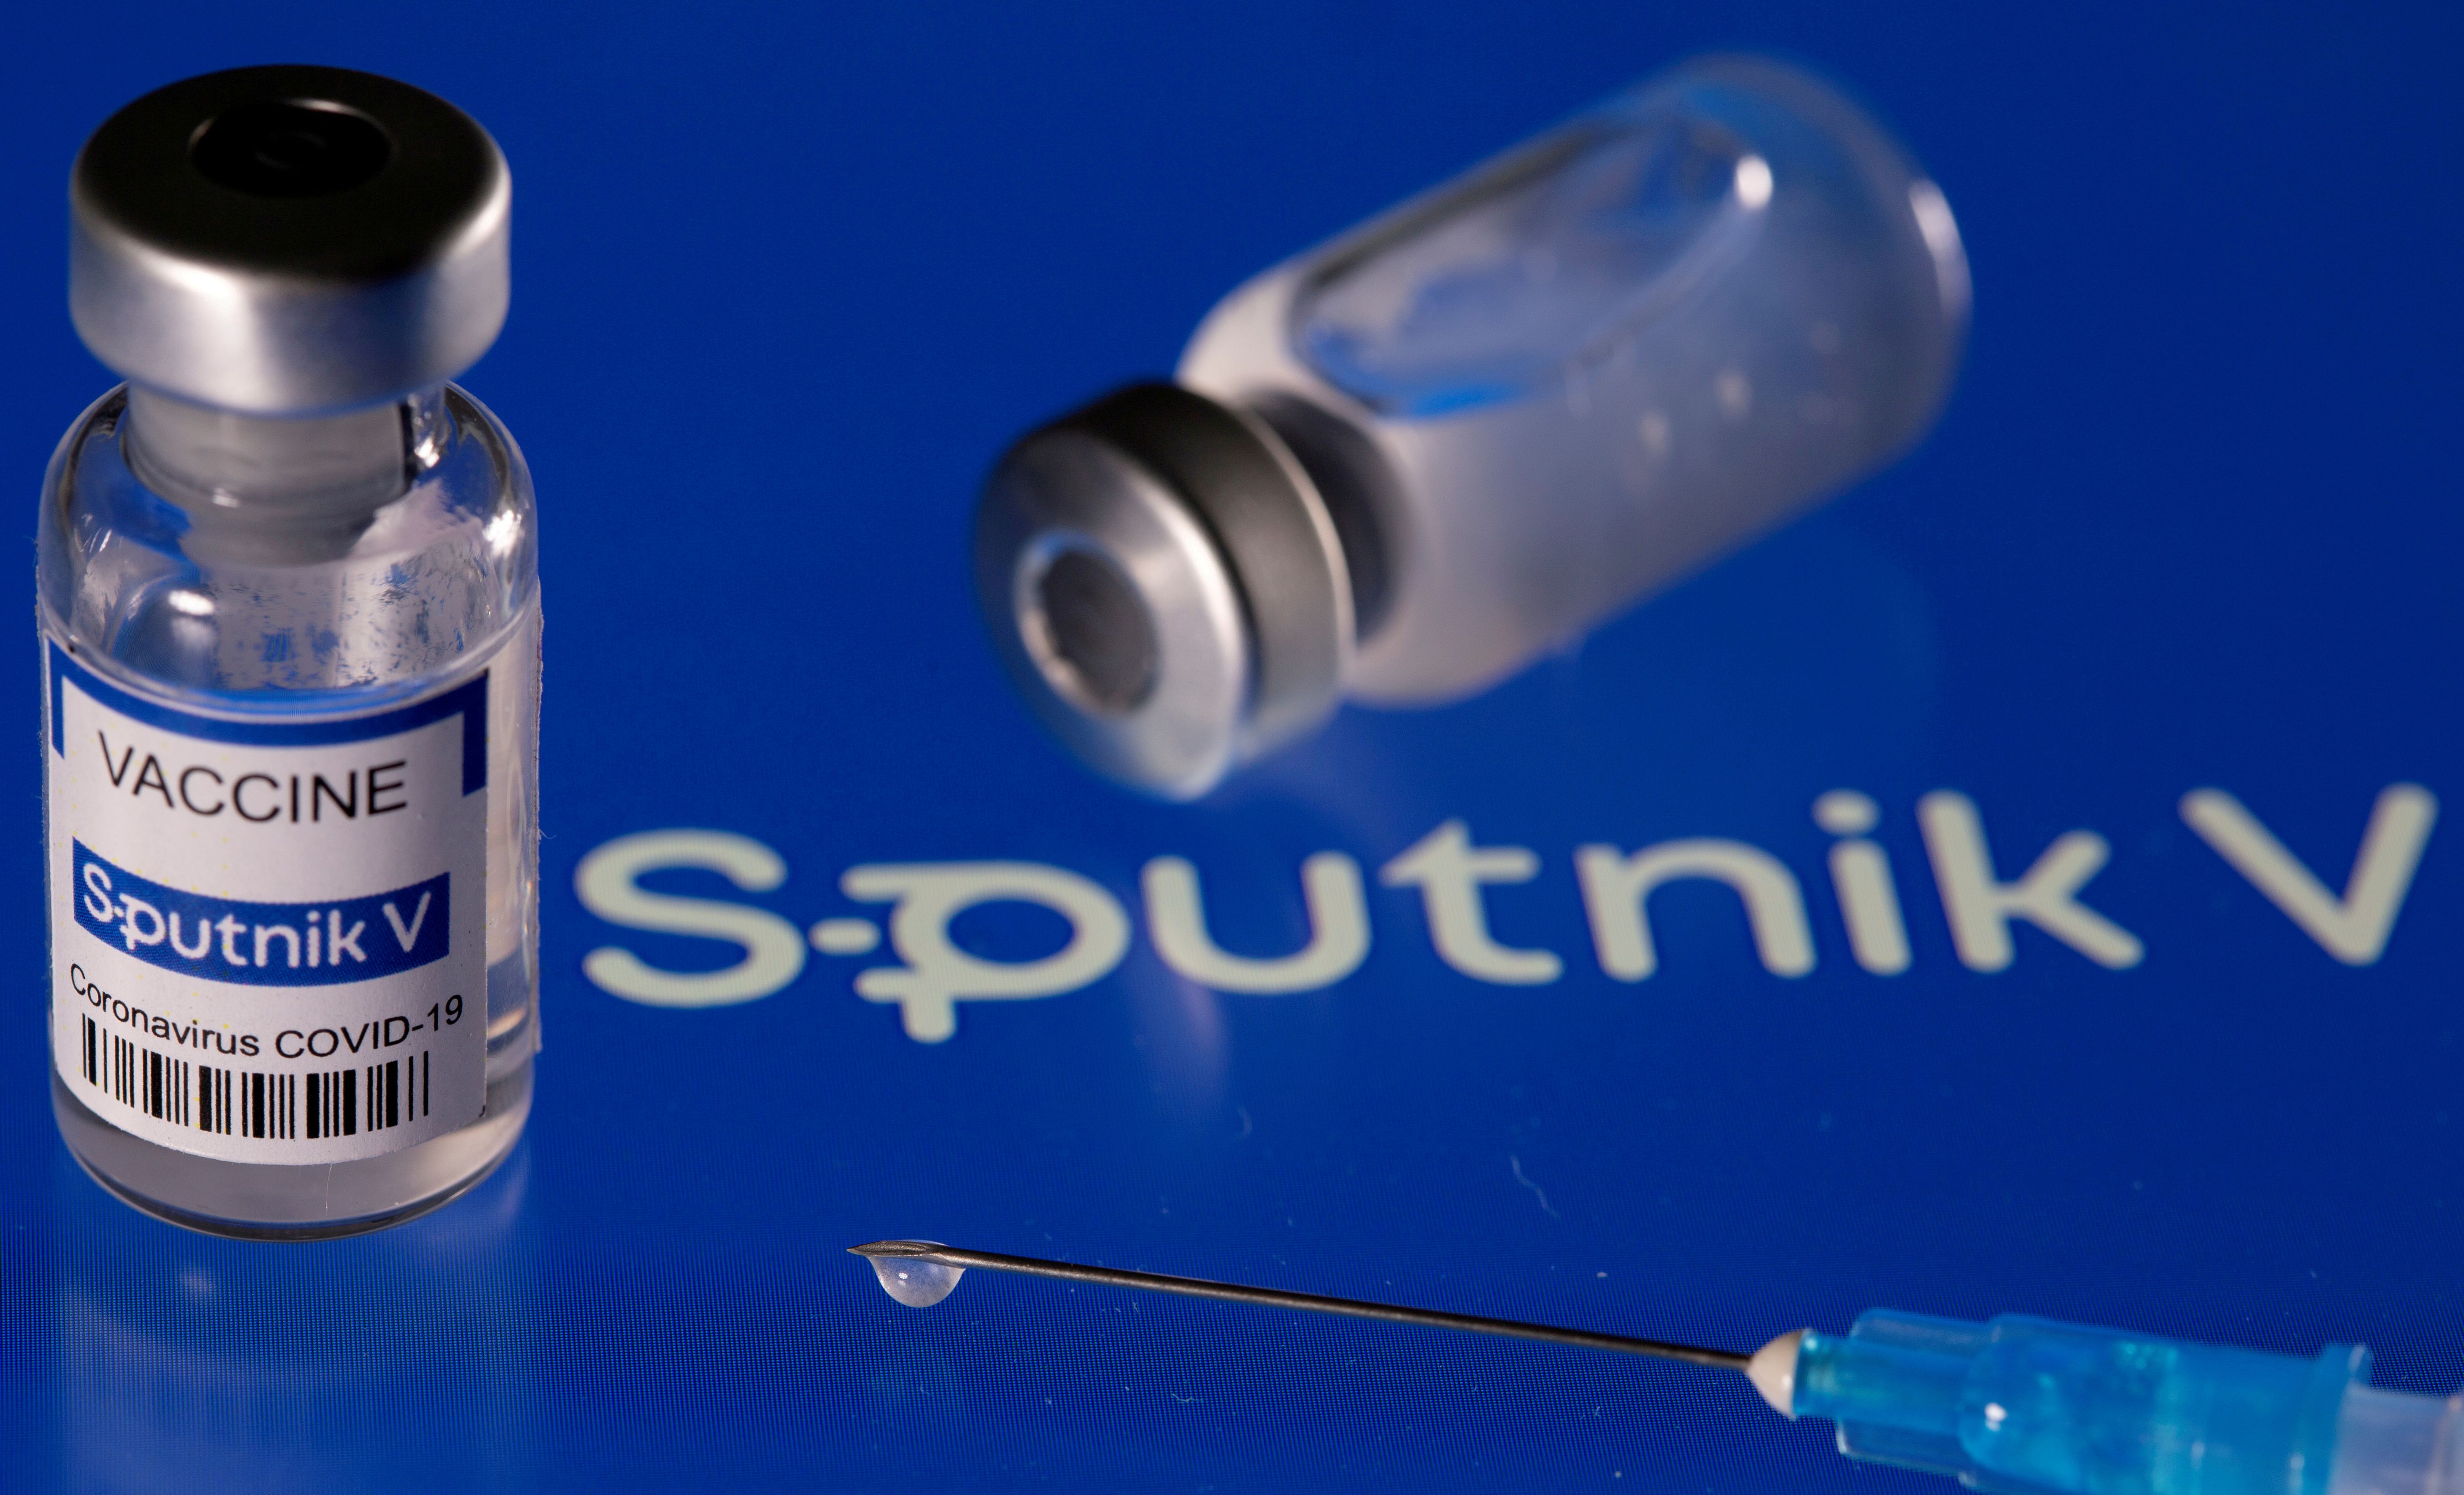 Lote de vacunas Sputnik es en realidad vacuna para influenza